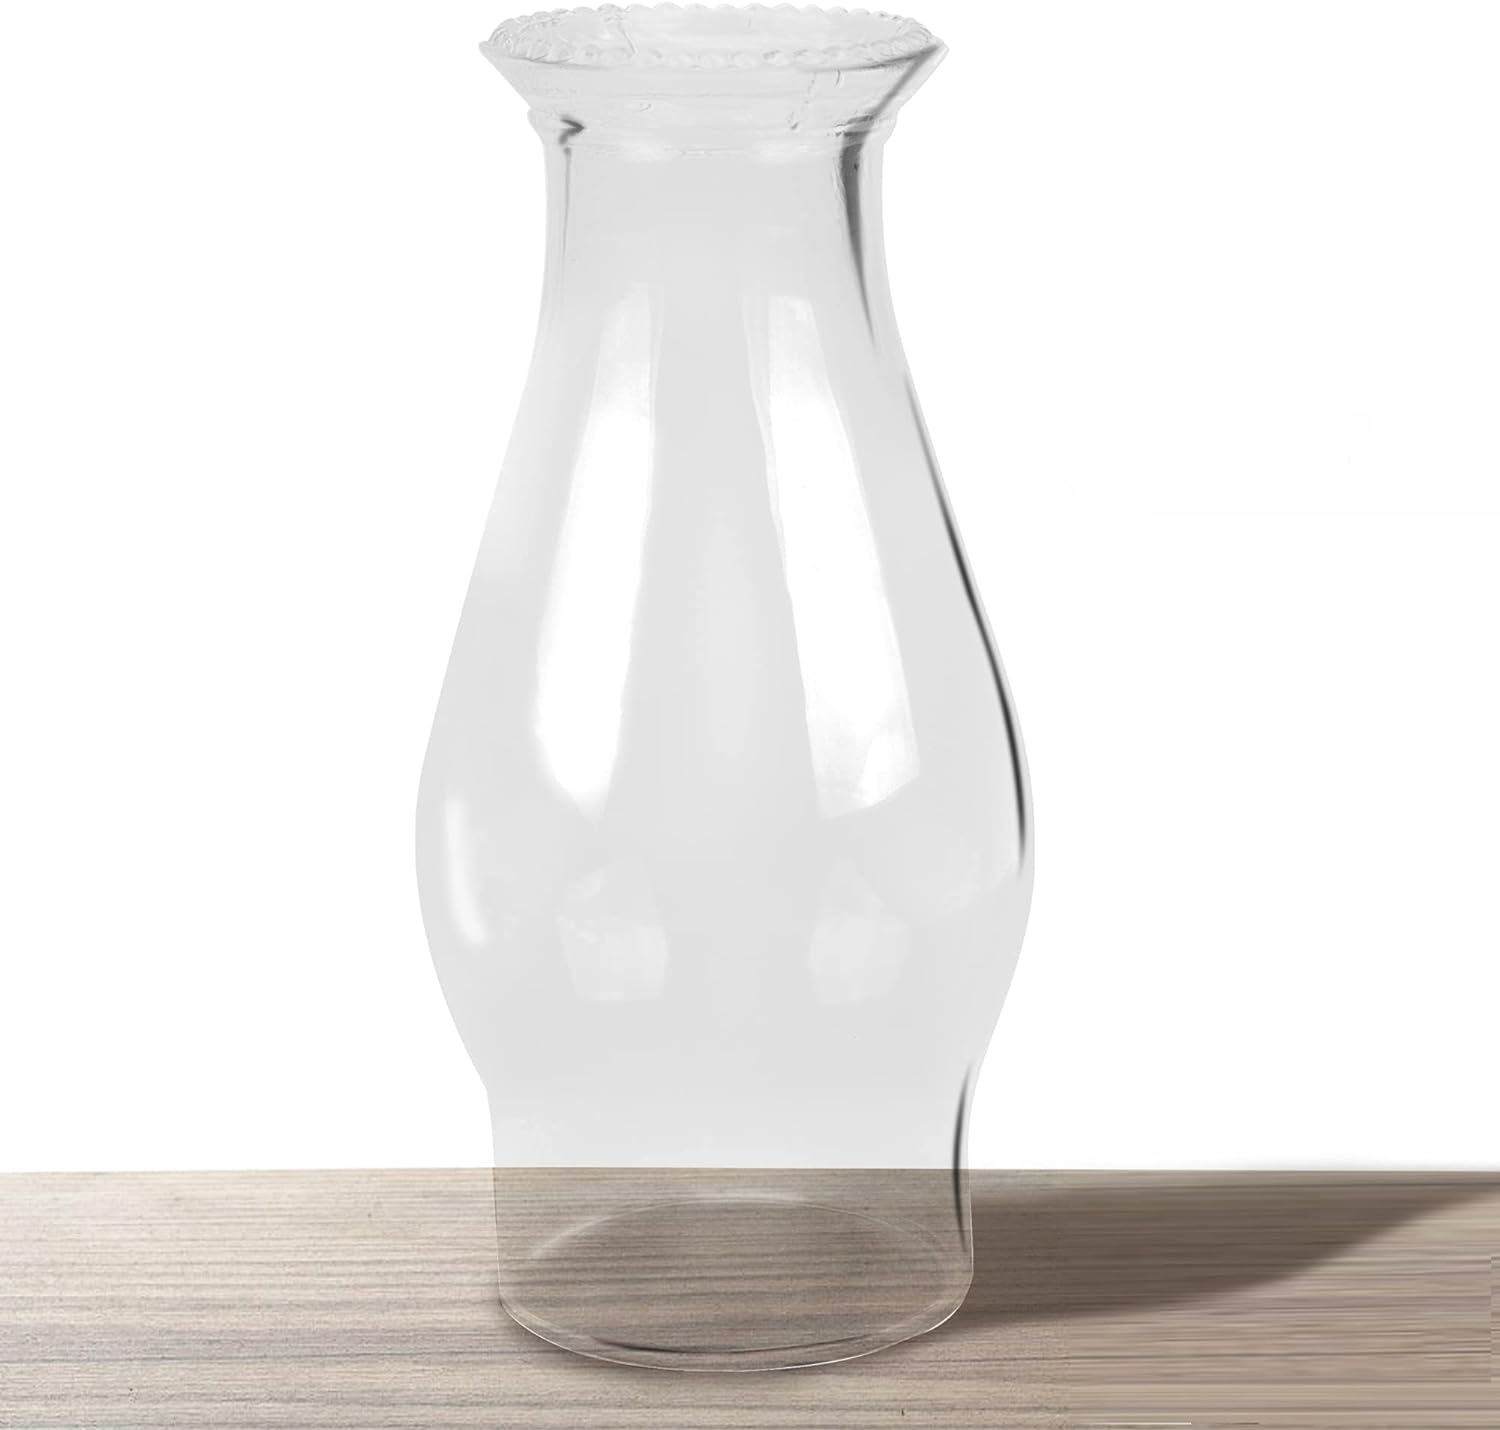 KEROSENE OIL LAMP CLEAR GLASS SHADE CHIMNEY GLOBE 3" BOTTOM FIT 8 1/2" HEIGHT 